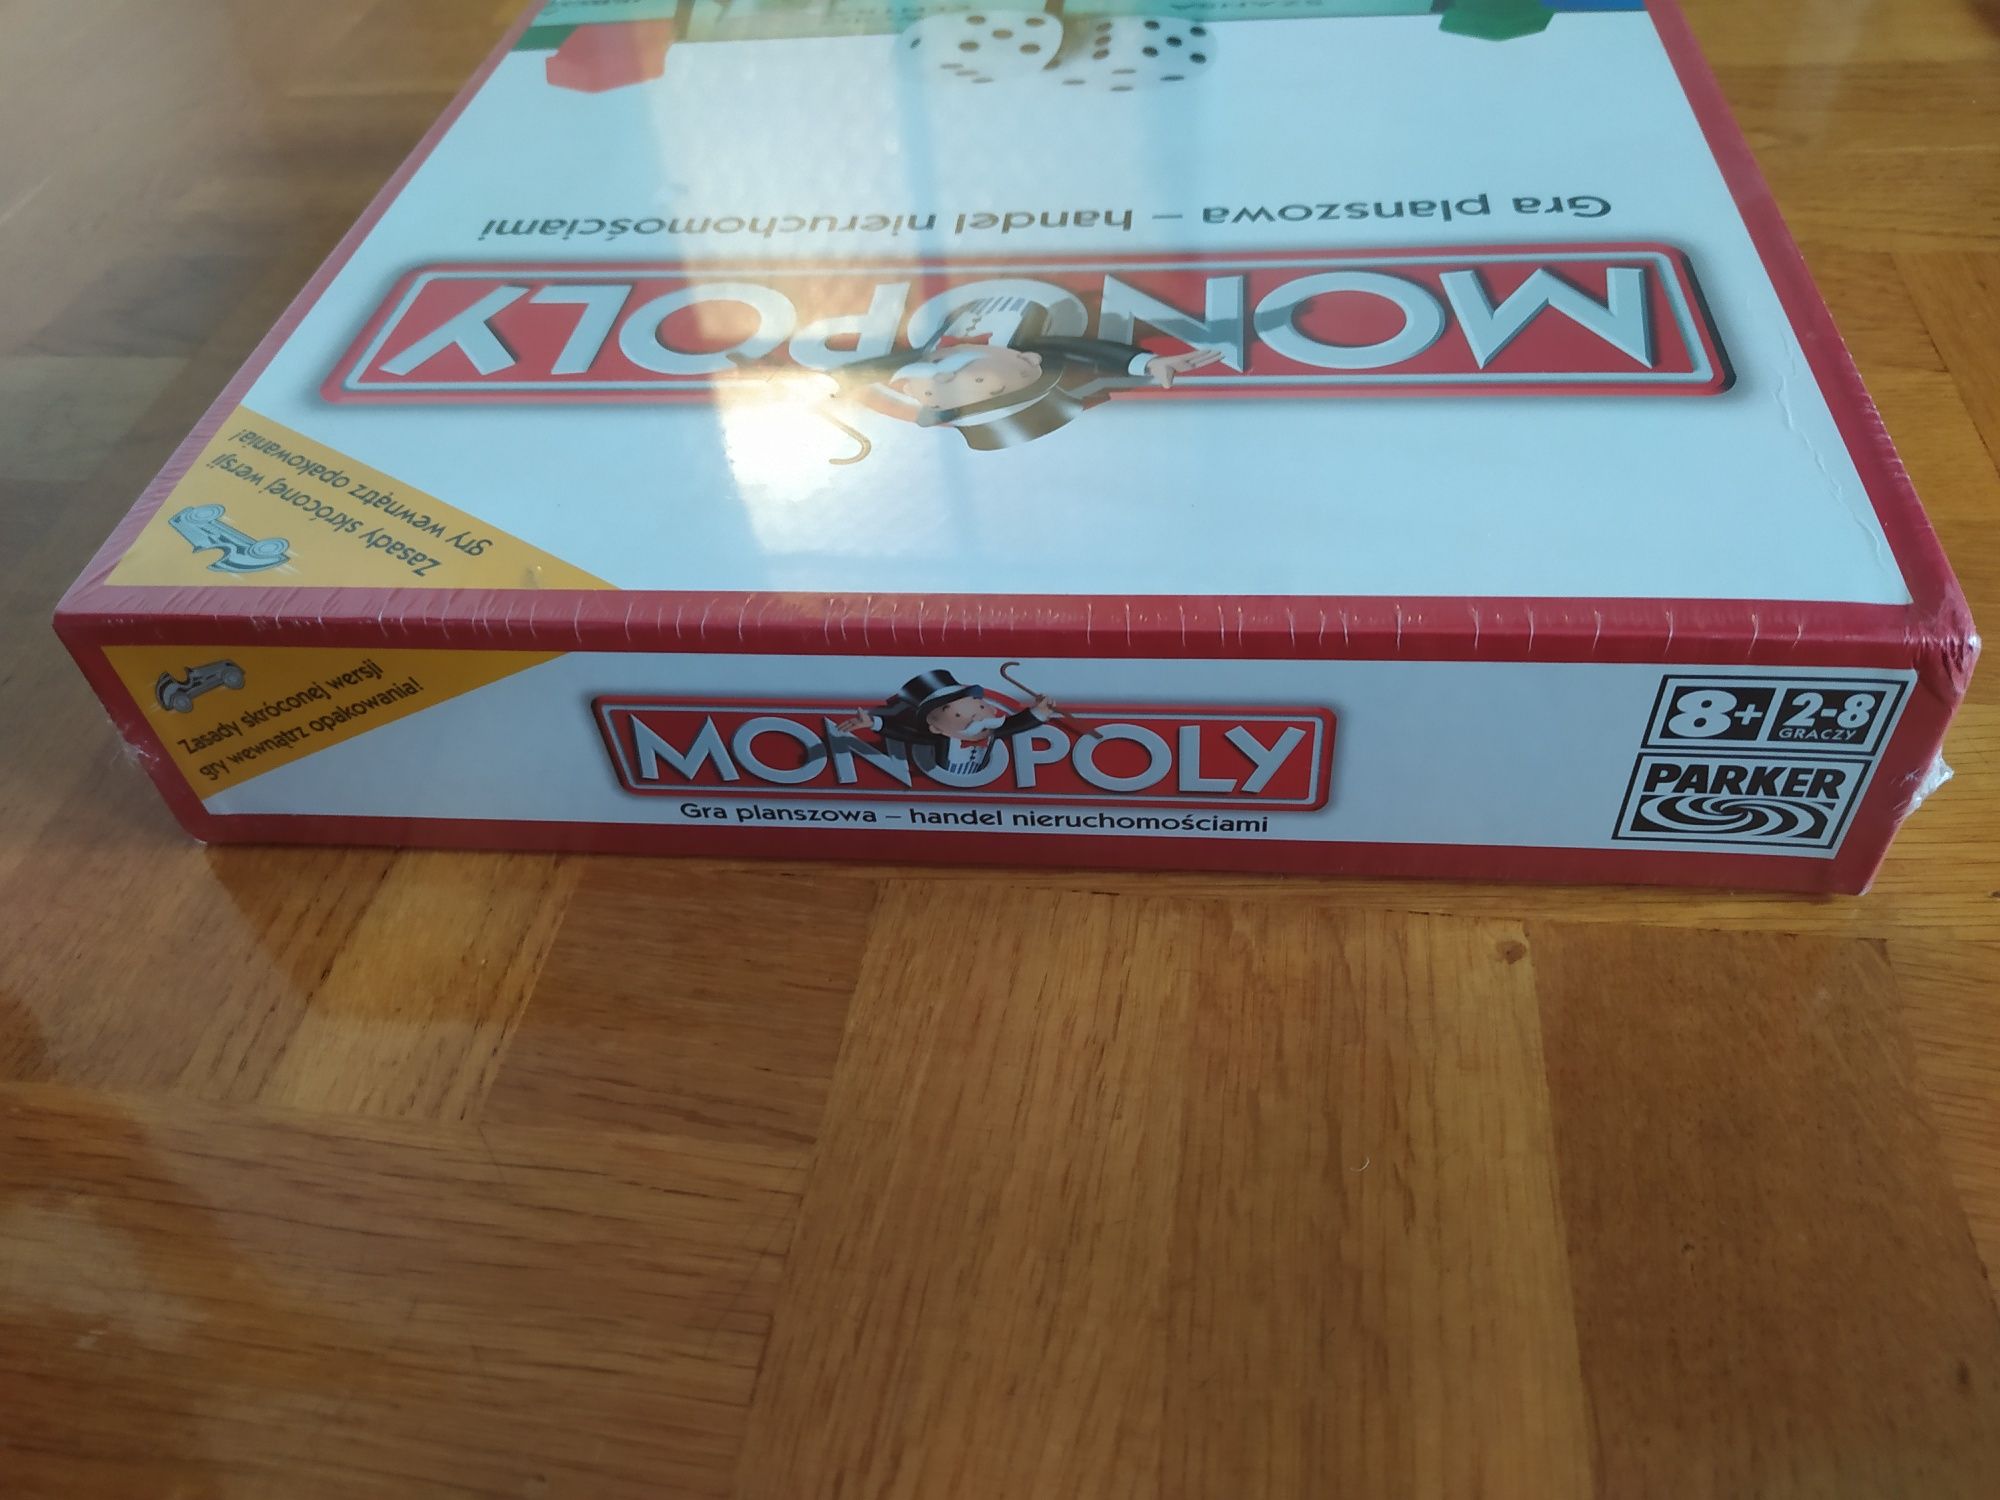 Monopoly gra planszowa handel nieruchomościami 2006